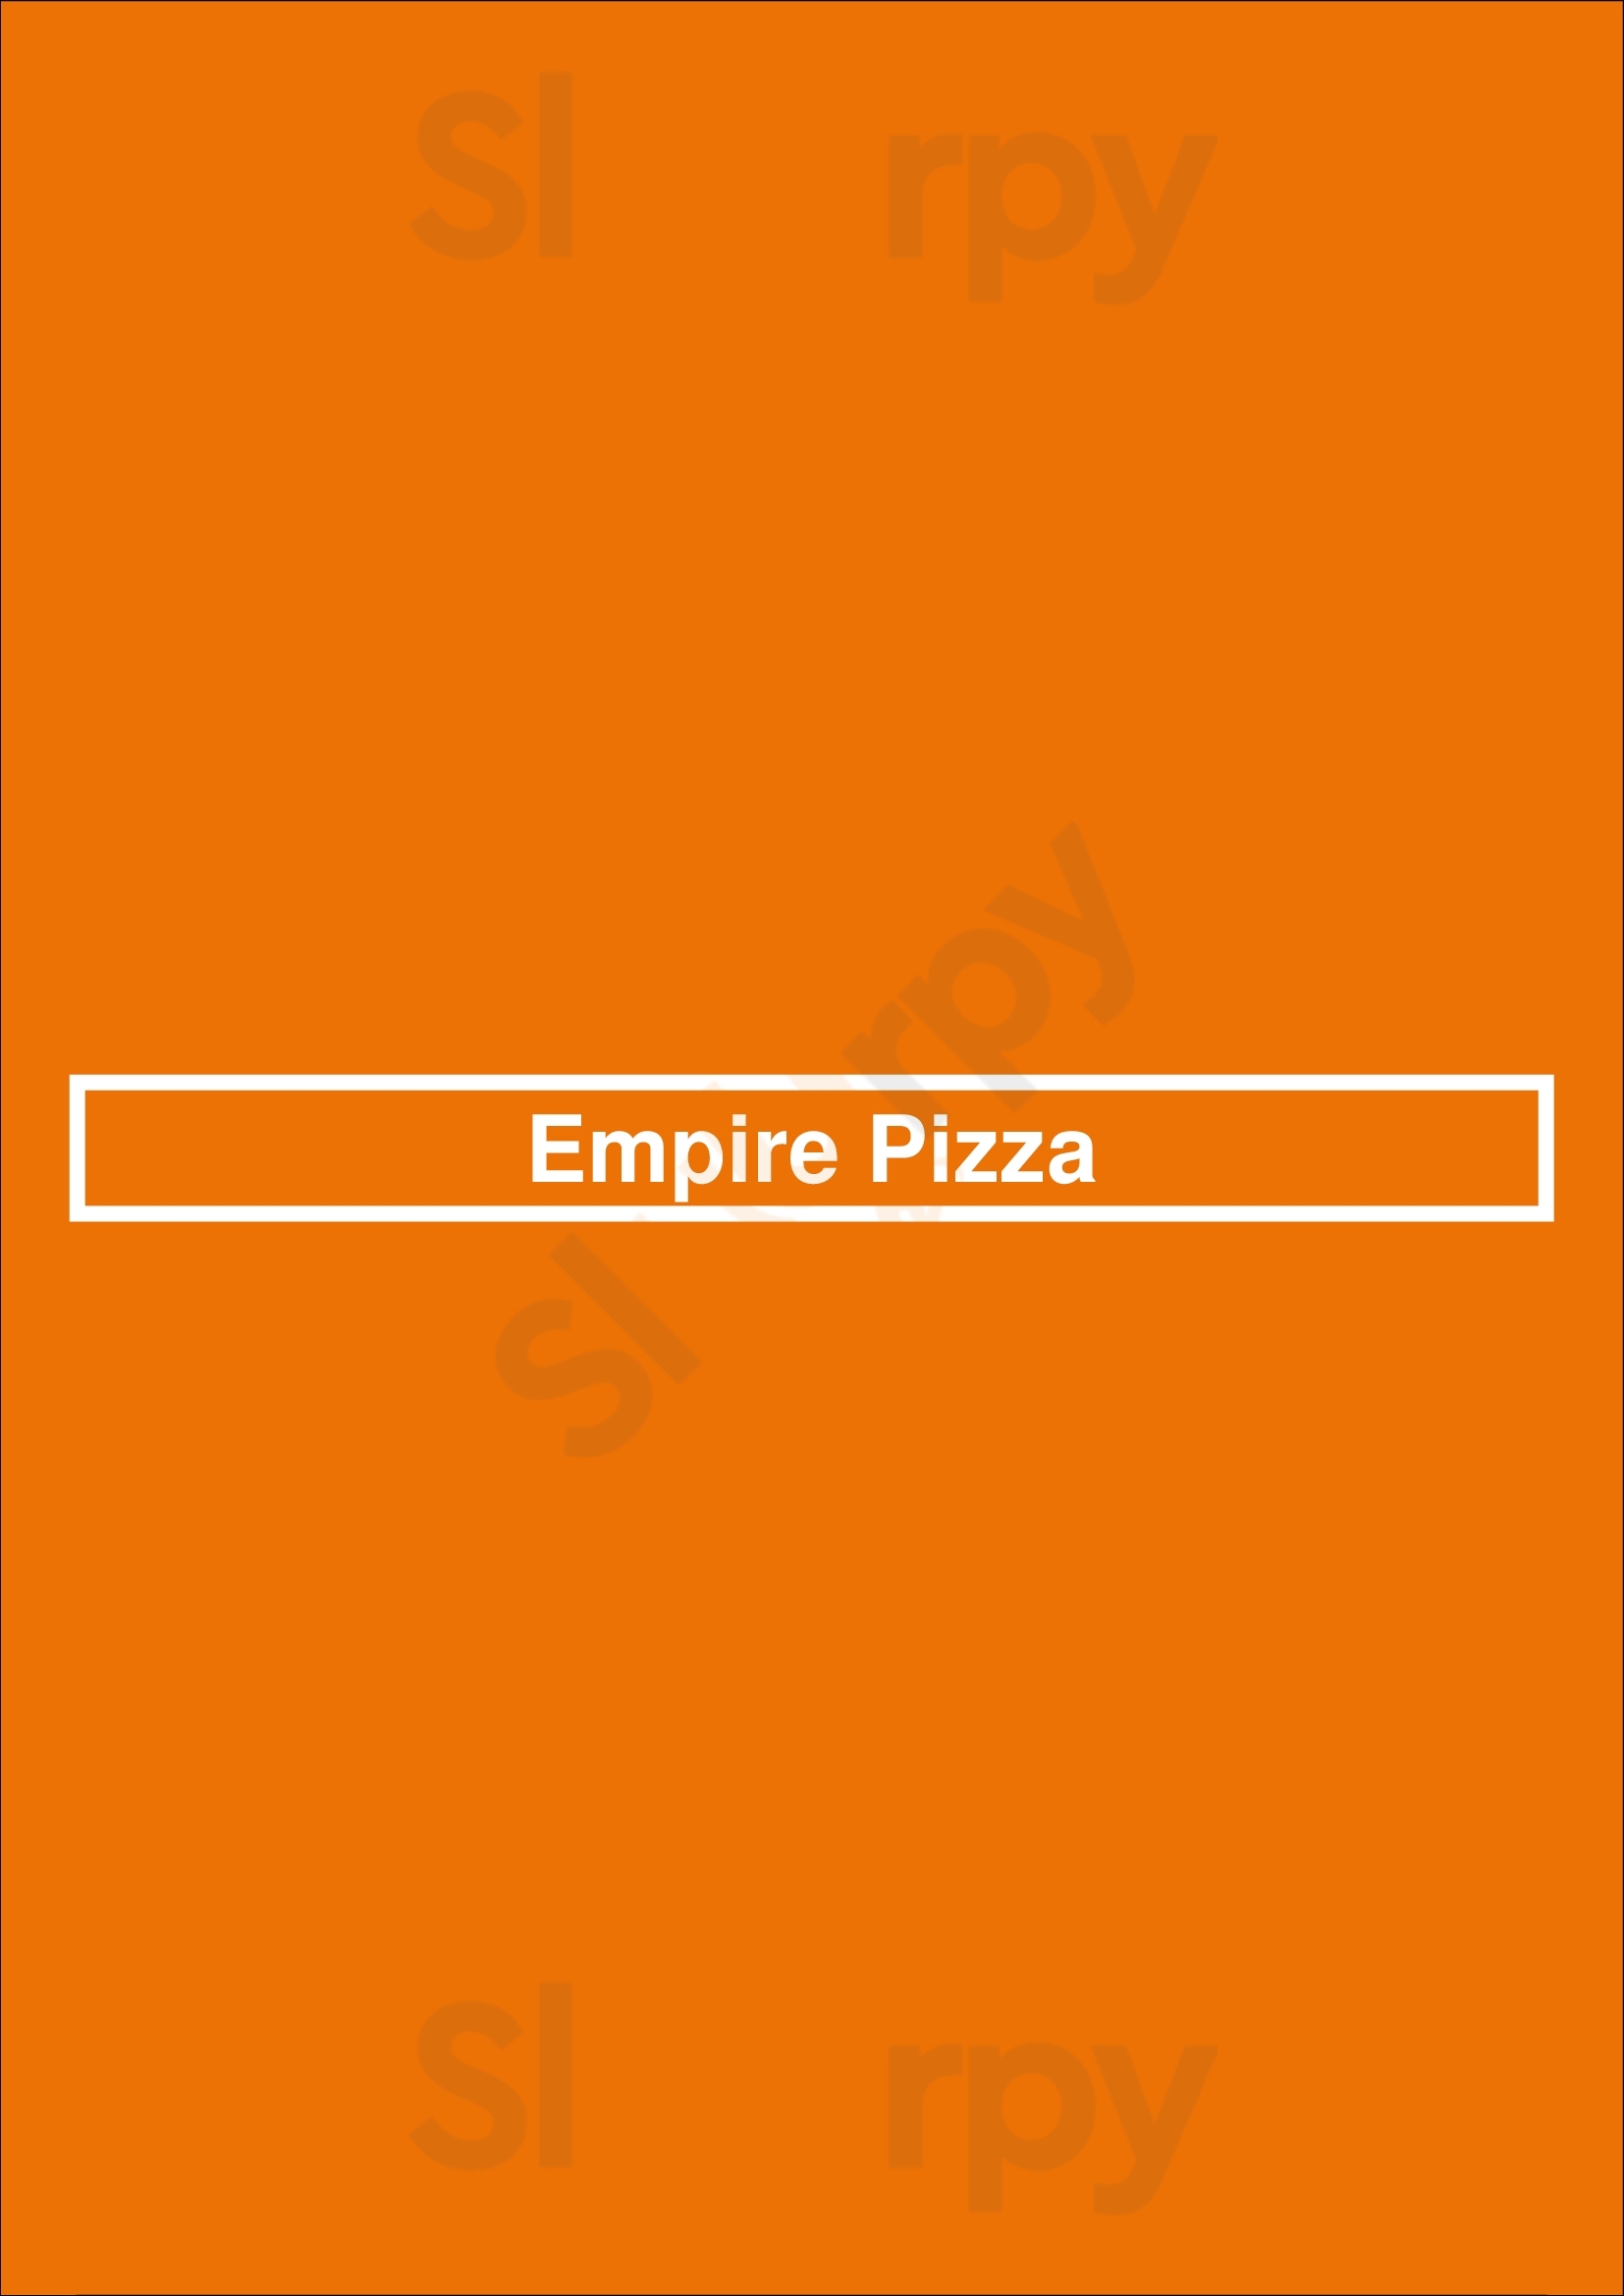 Empire Pizza Houston Menu - 1